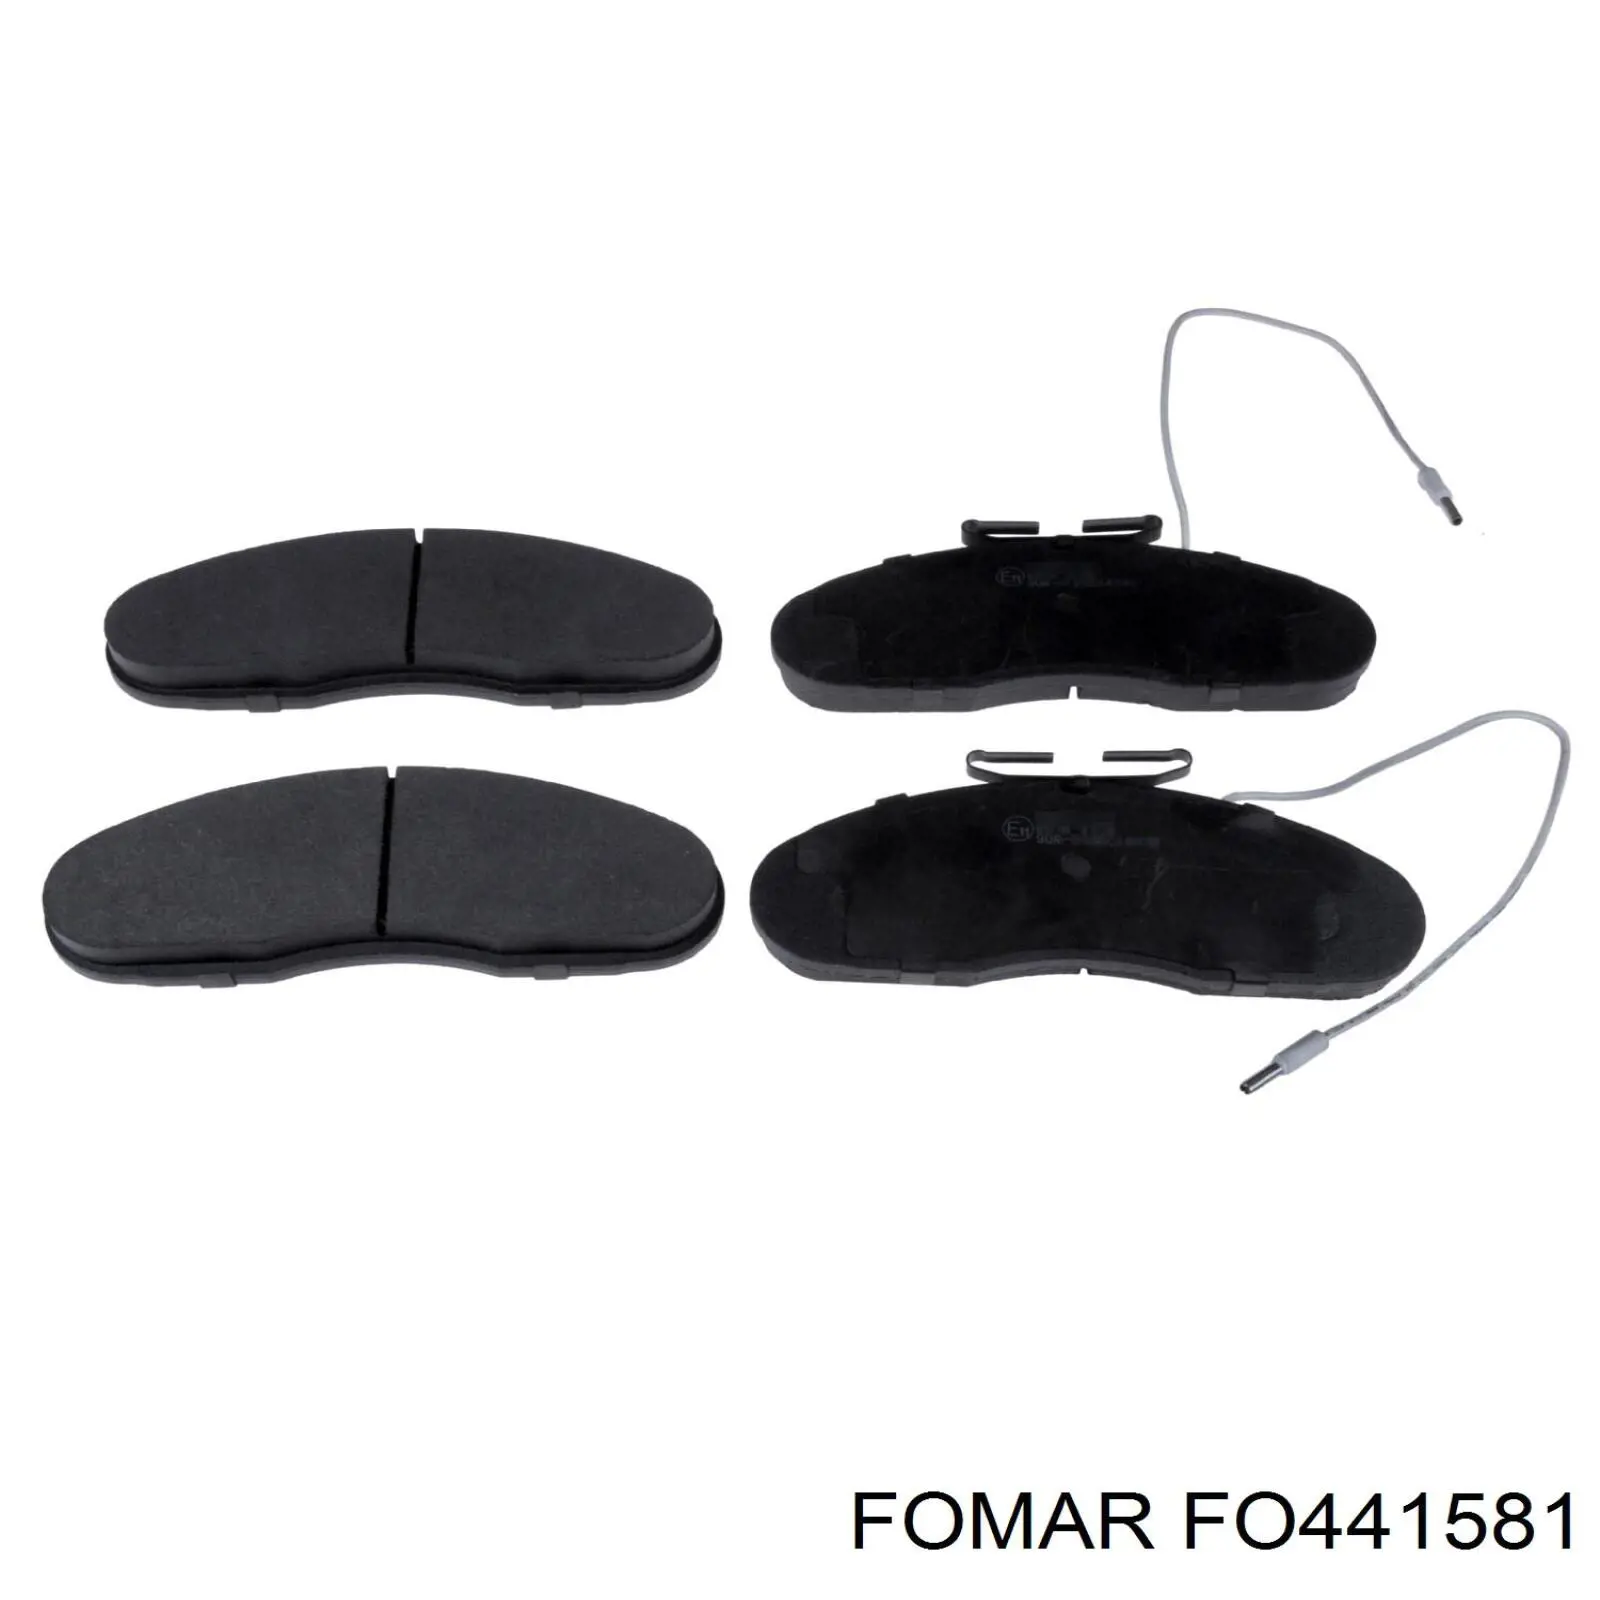 FO 441581 Fomar Roulunds колодки тормозные передние дисковые